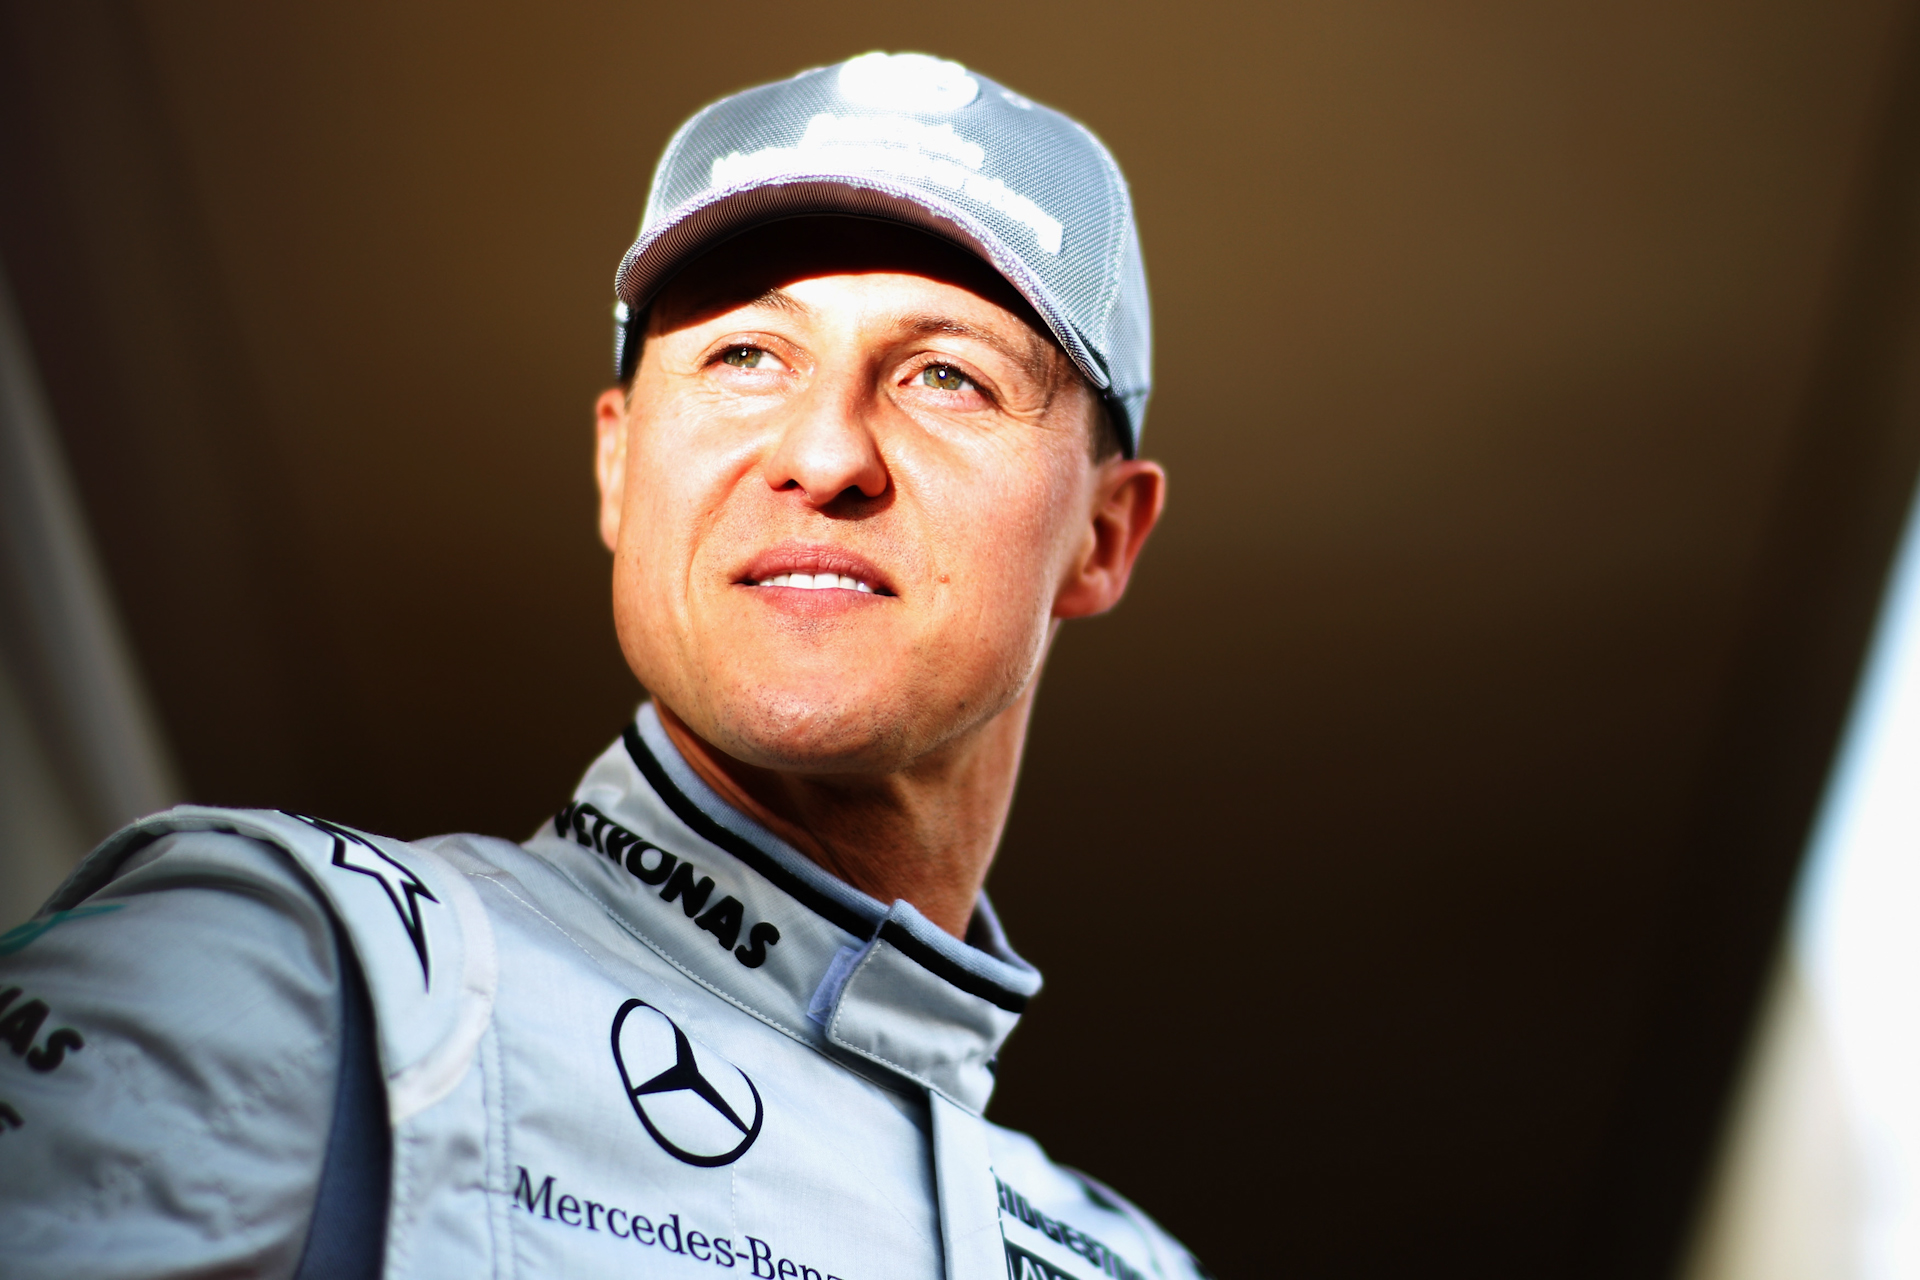 Tragic news about Michael Schumacher: 